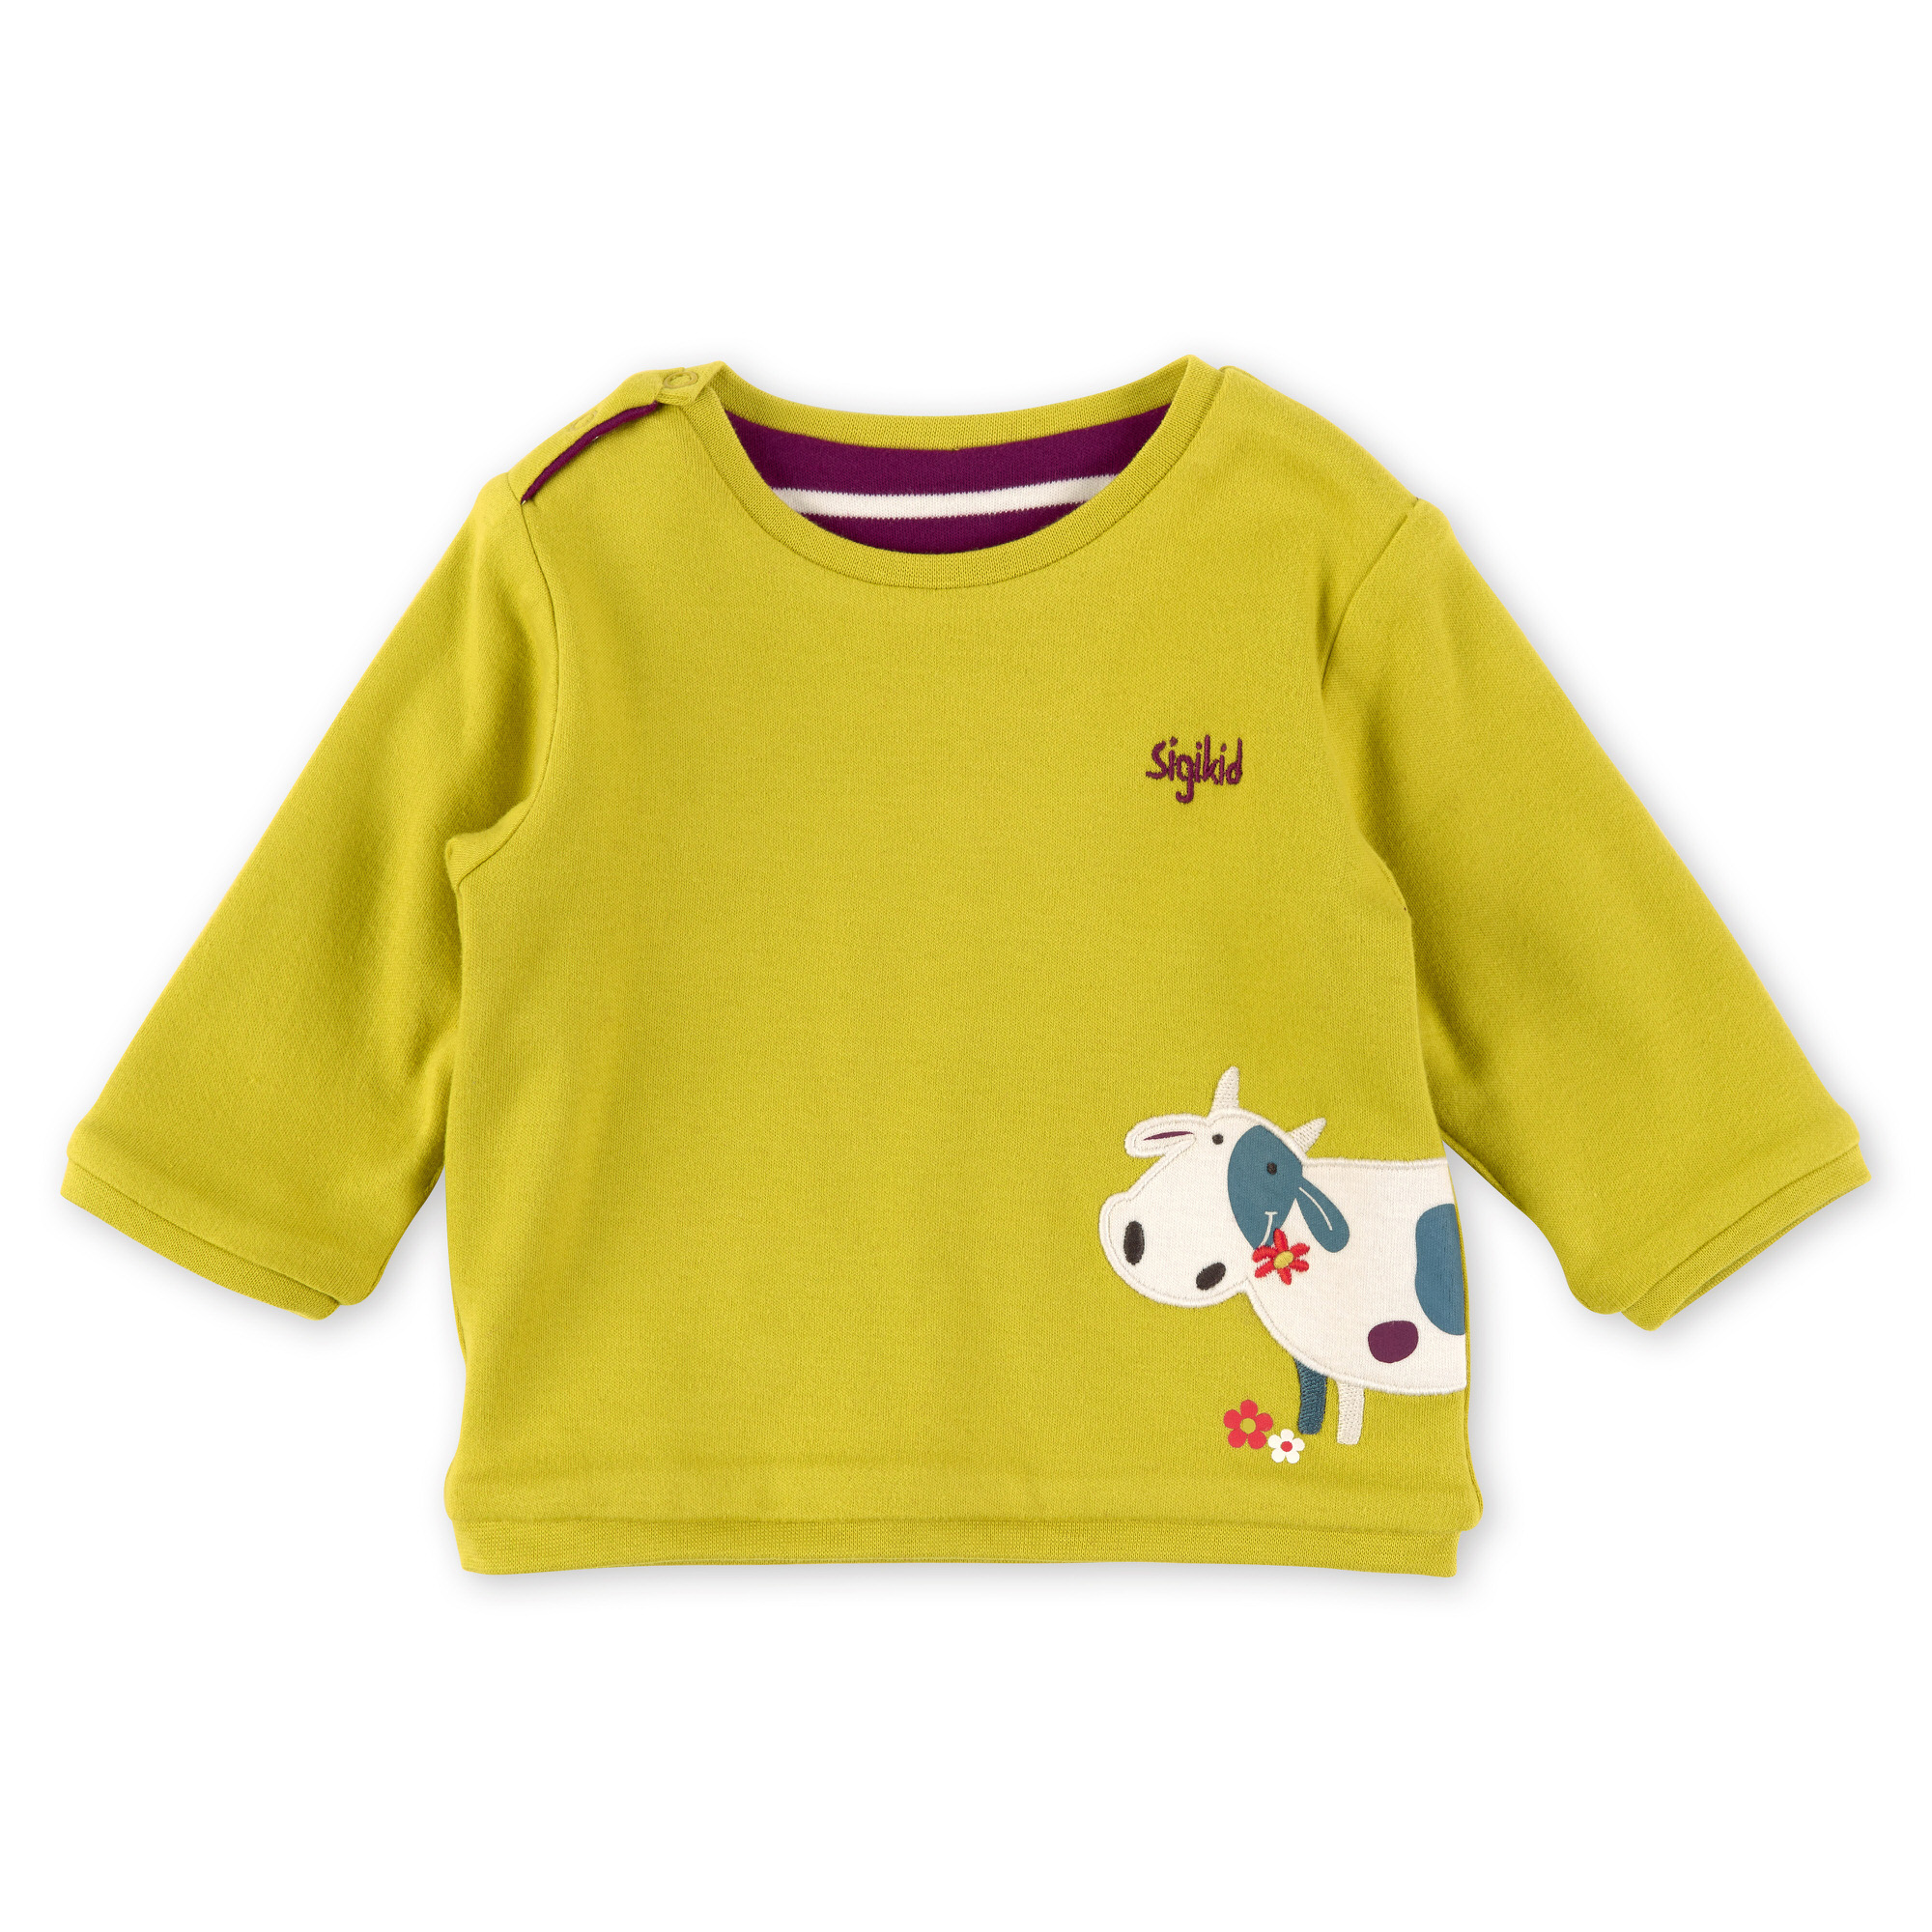 Baby Wendeshirt gelbgrün oder lila/weiß gestreift